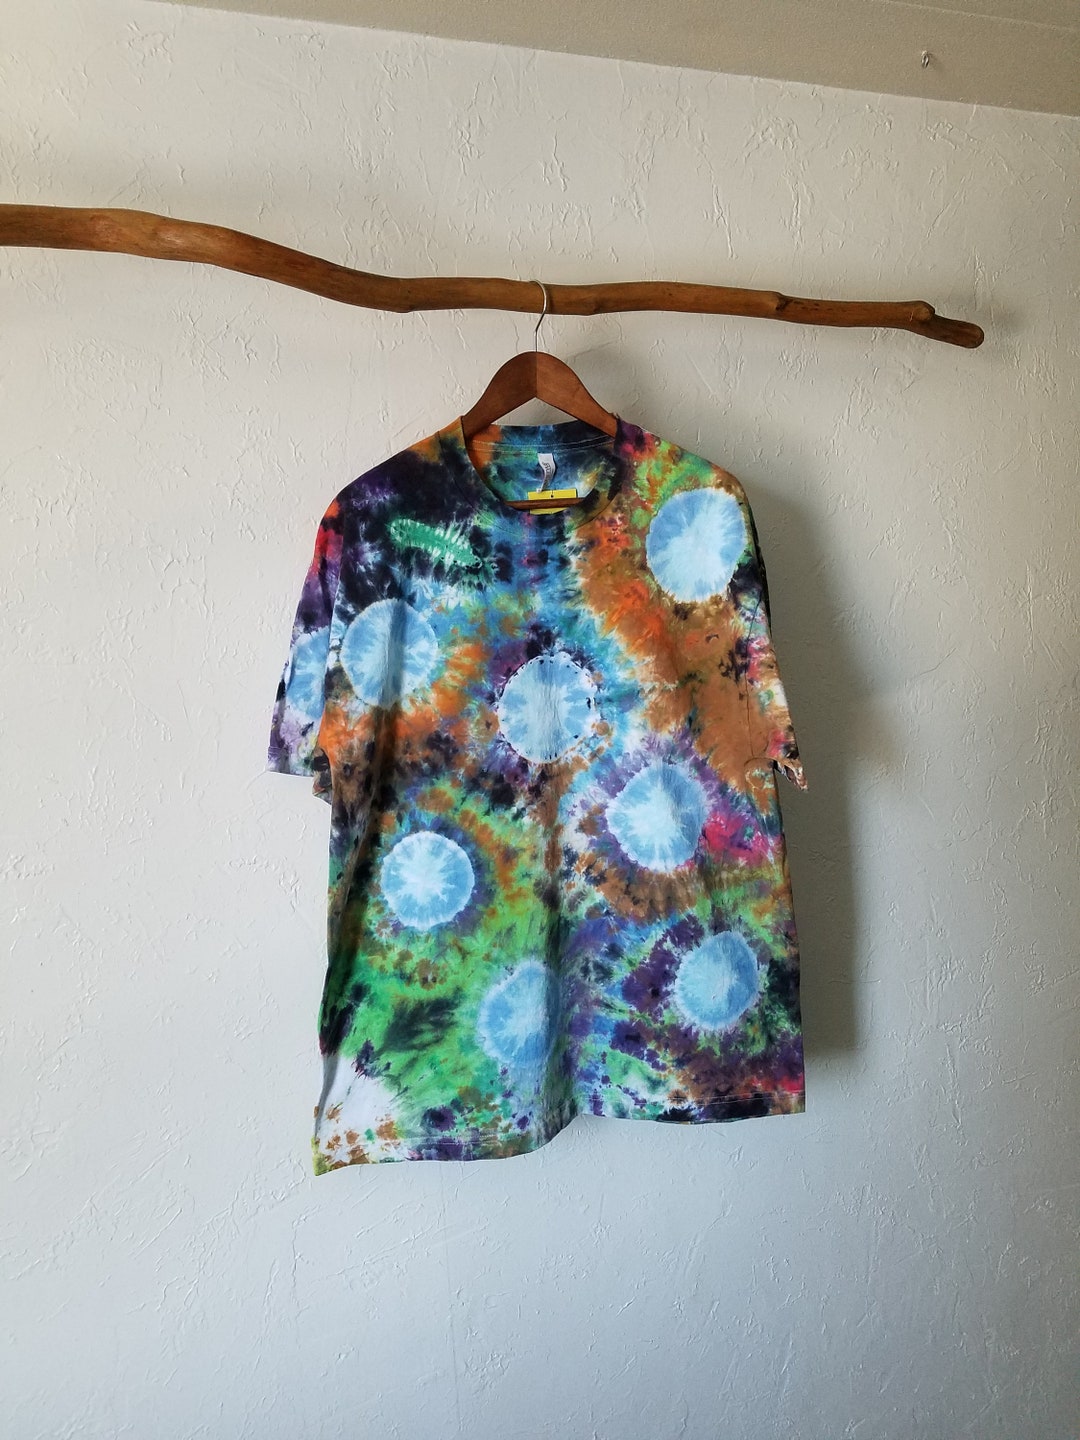 Amoeba Tie Dye 3D Tie Dye Science Lover's Shirt - Etsy